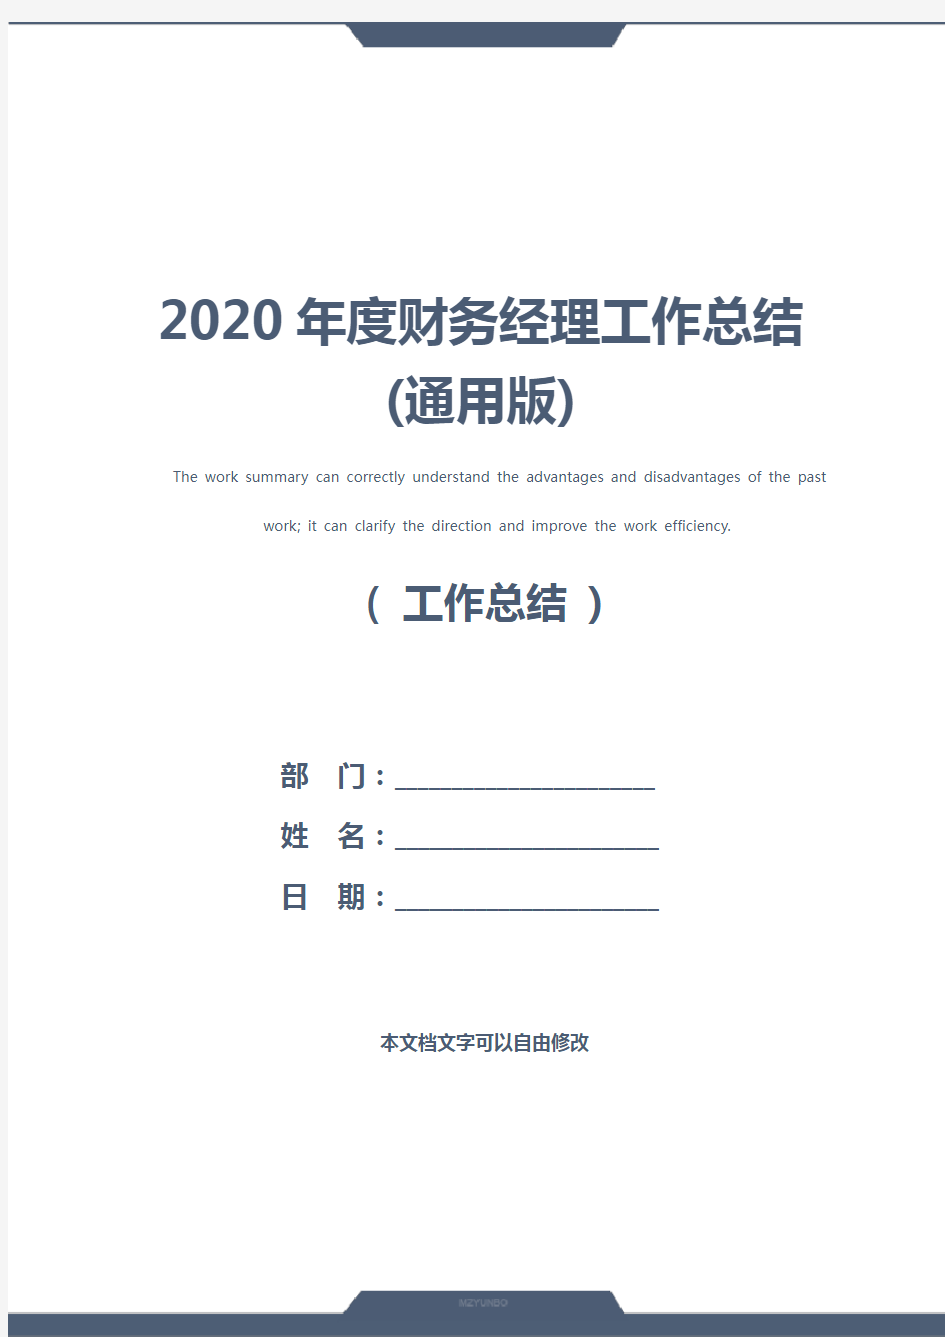 2020年度财务经理工作总结(通用版)